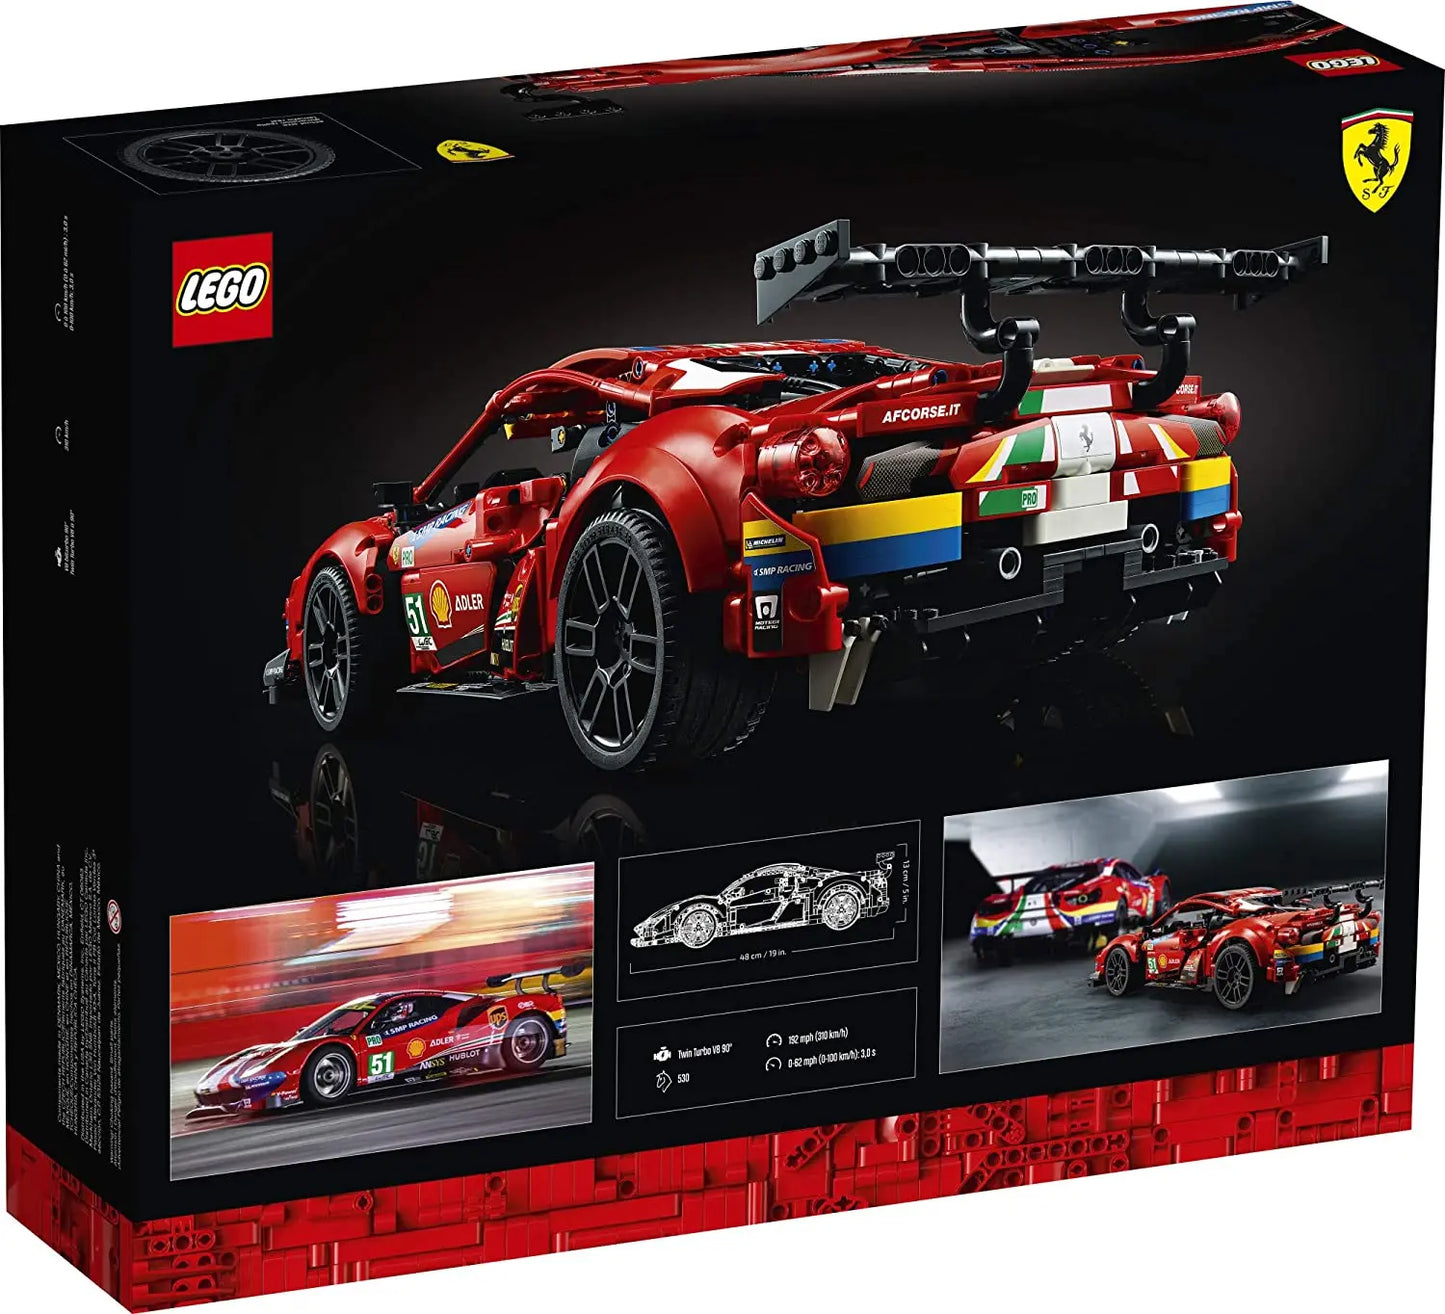 LEGO 42125 Technic Ferrari 488 GTE AF Corse #51 , Modèle authentique de la voiture de course dendurance à exposer lego